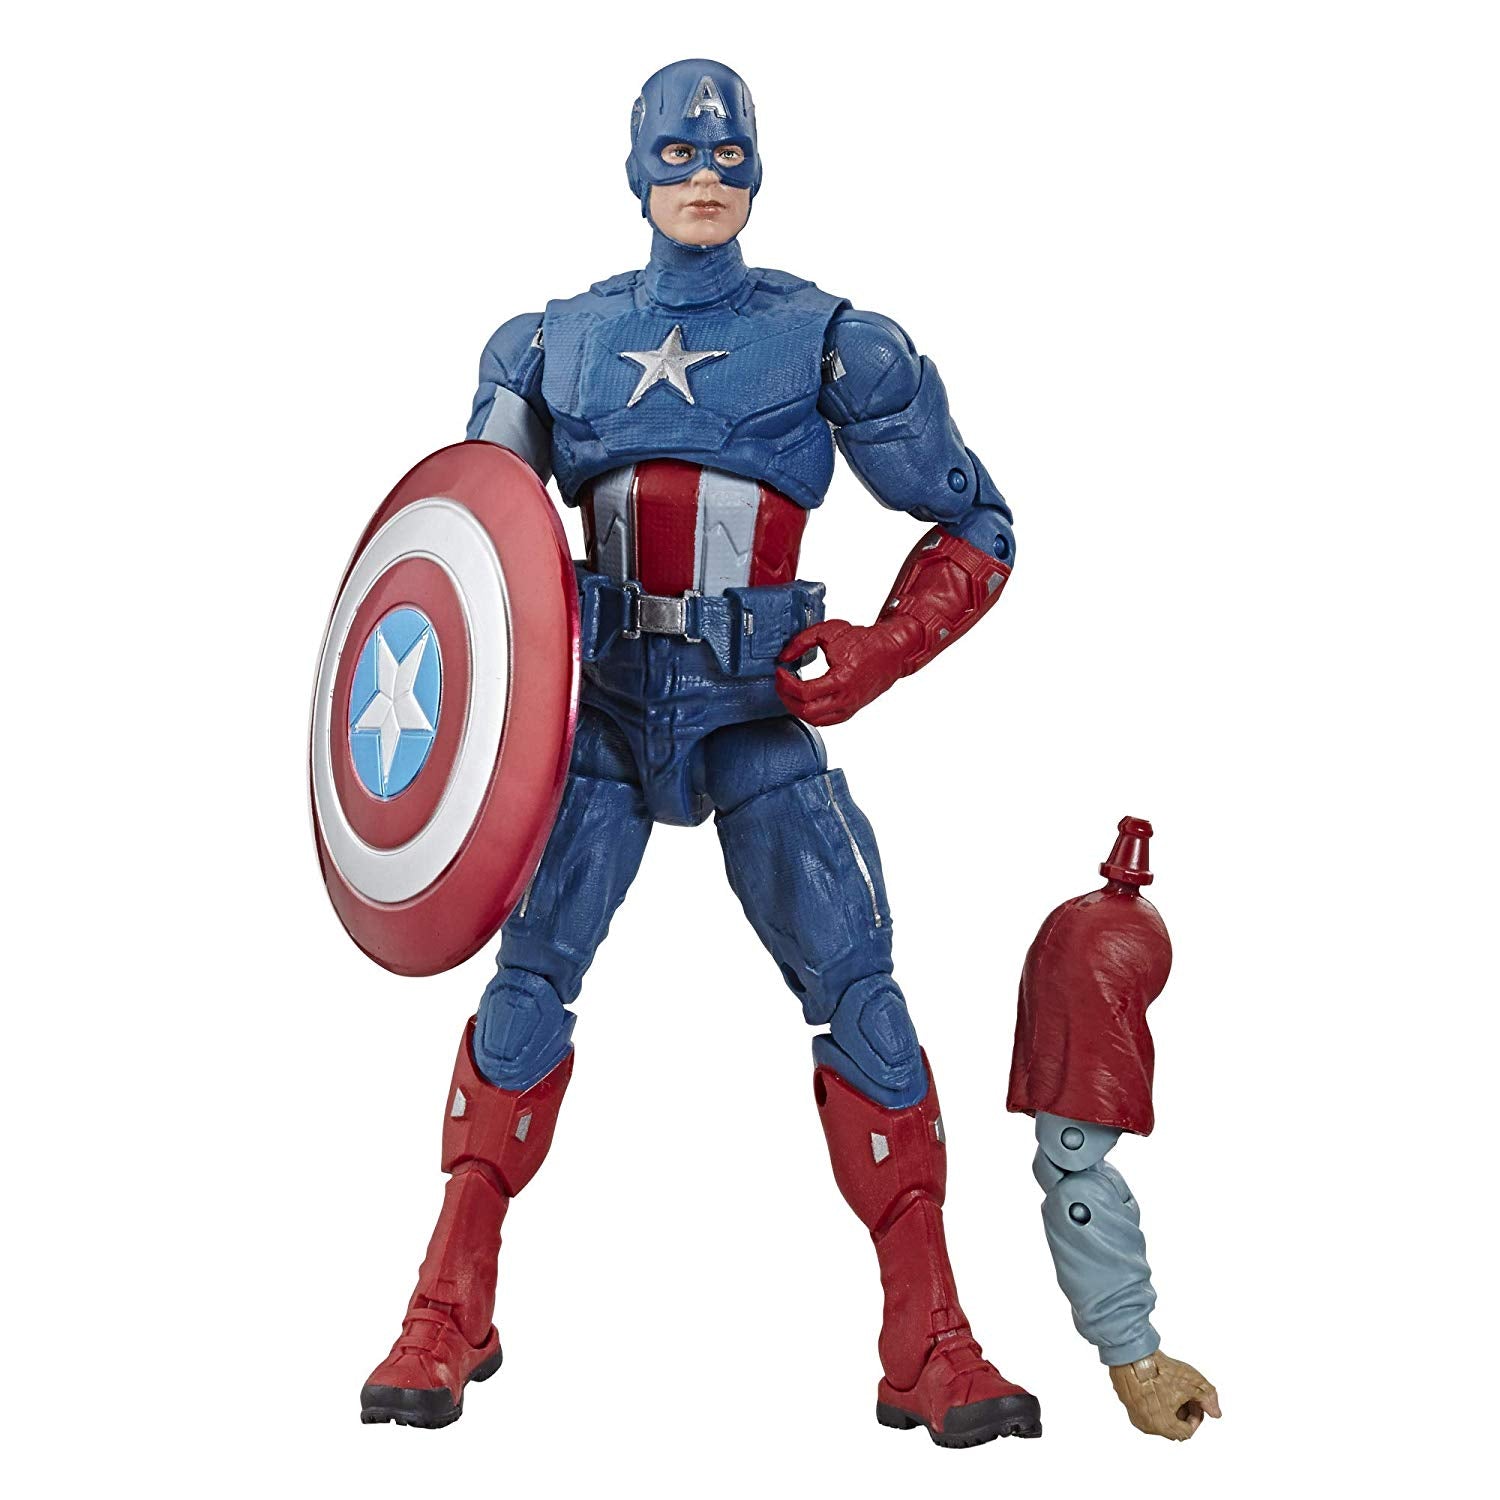 Hasbro - Marvel Legends - Avengers: Endgame - Captain America - Marvelous Toys